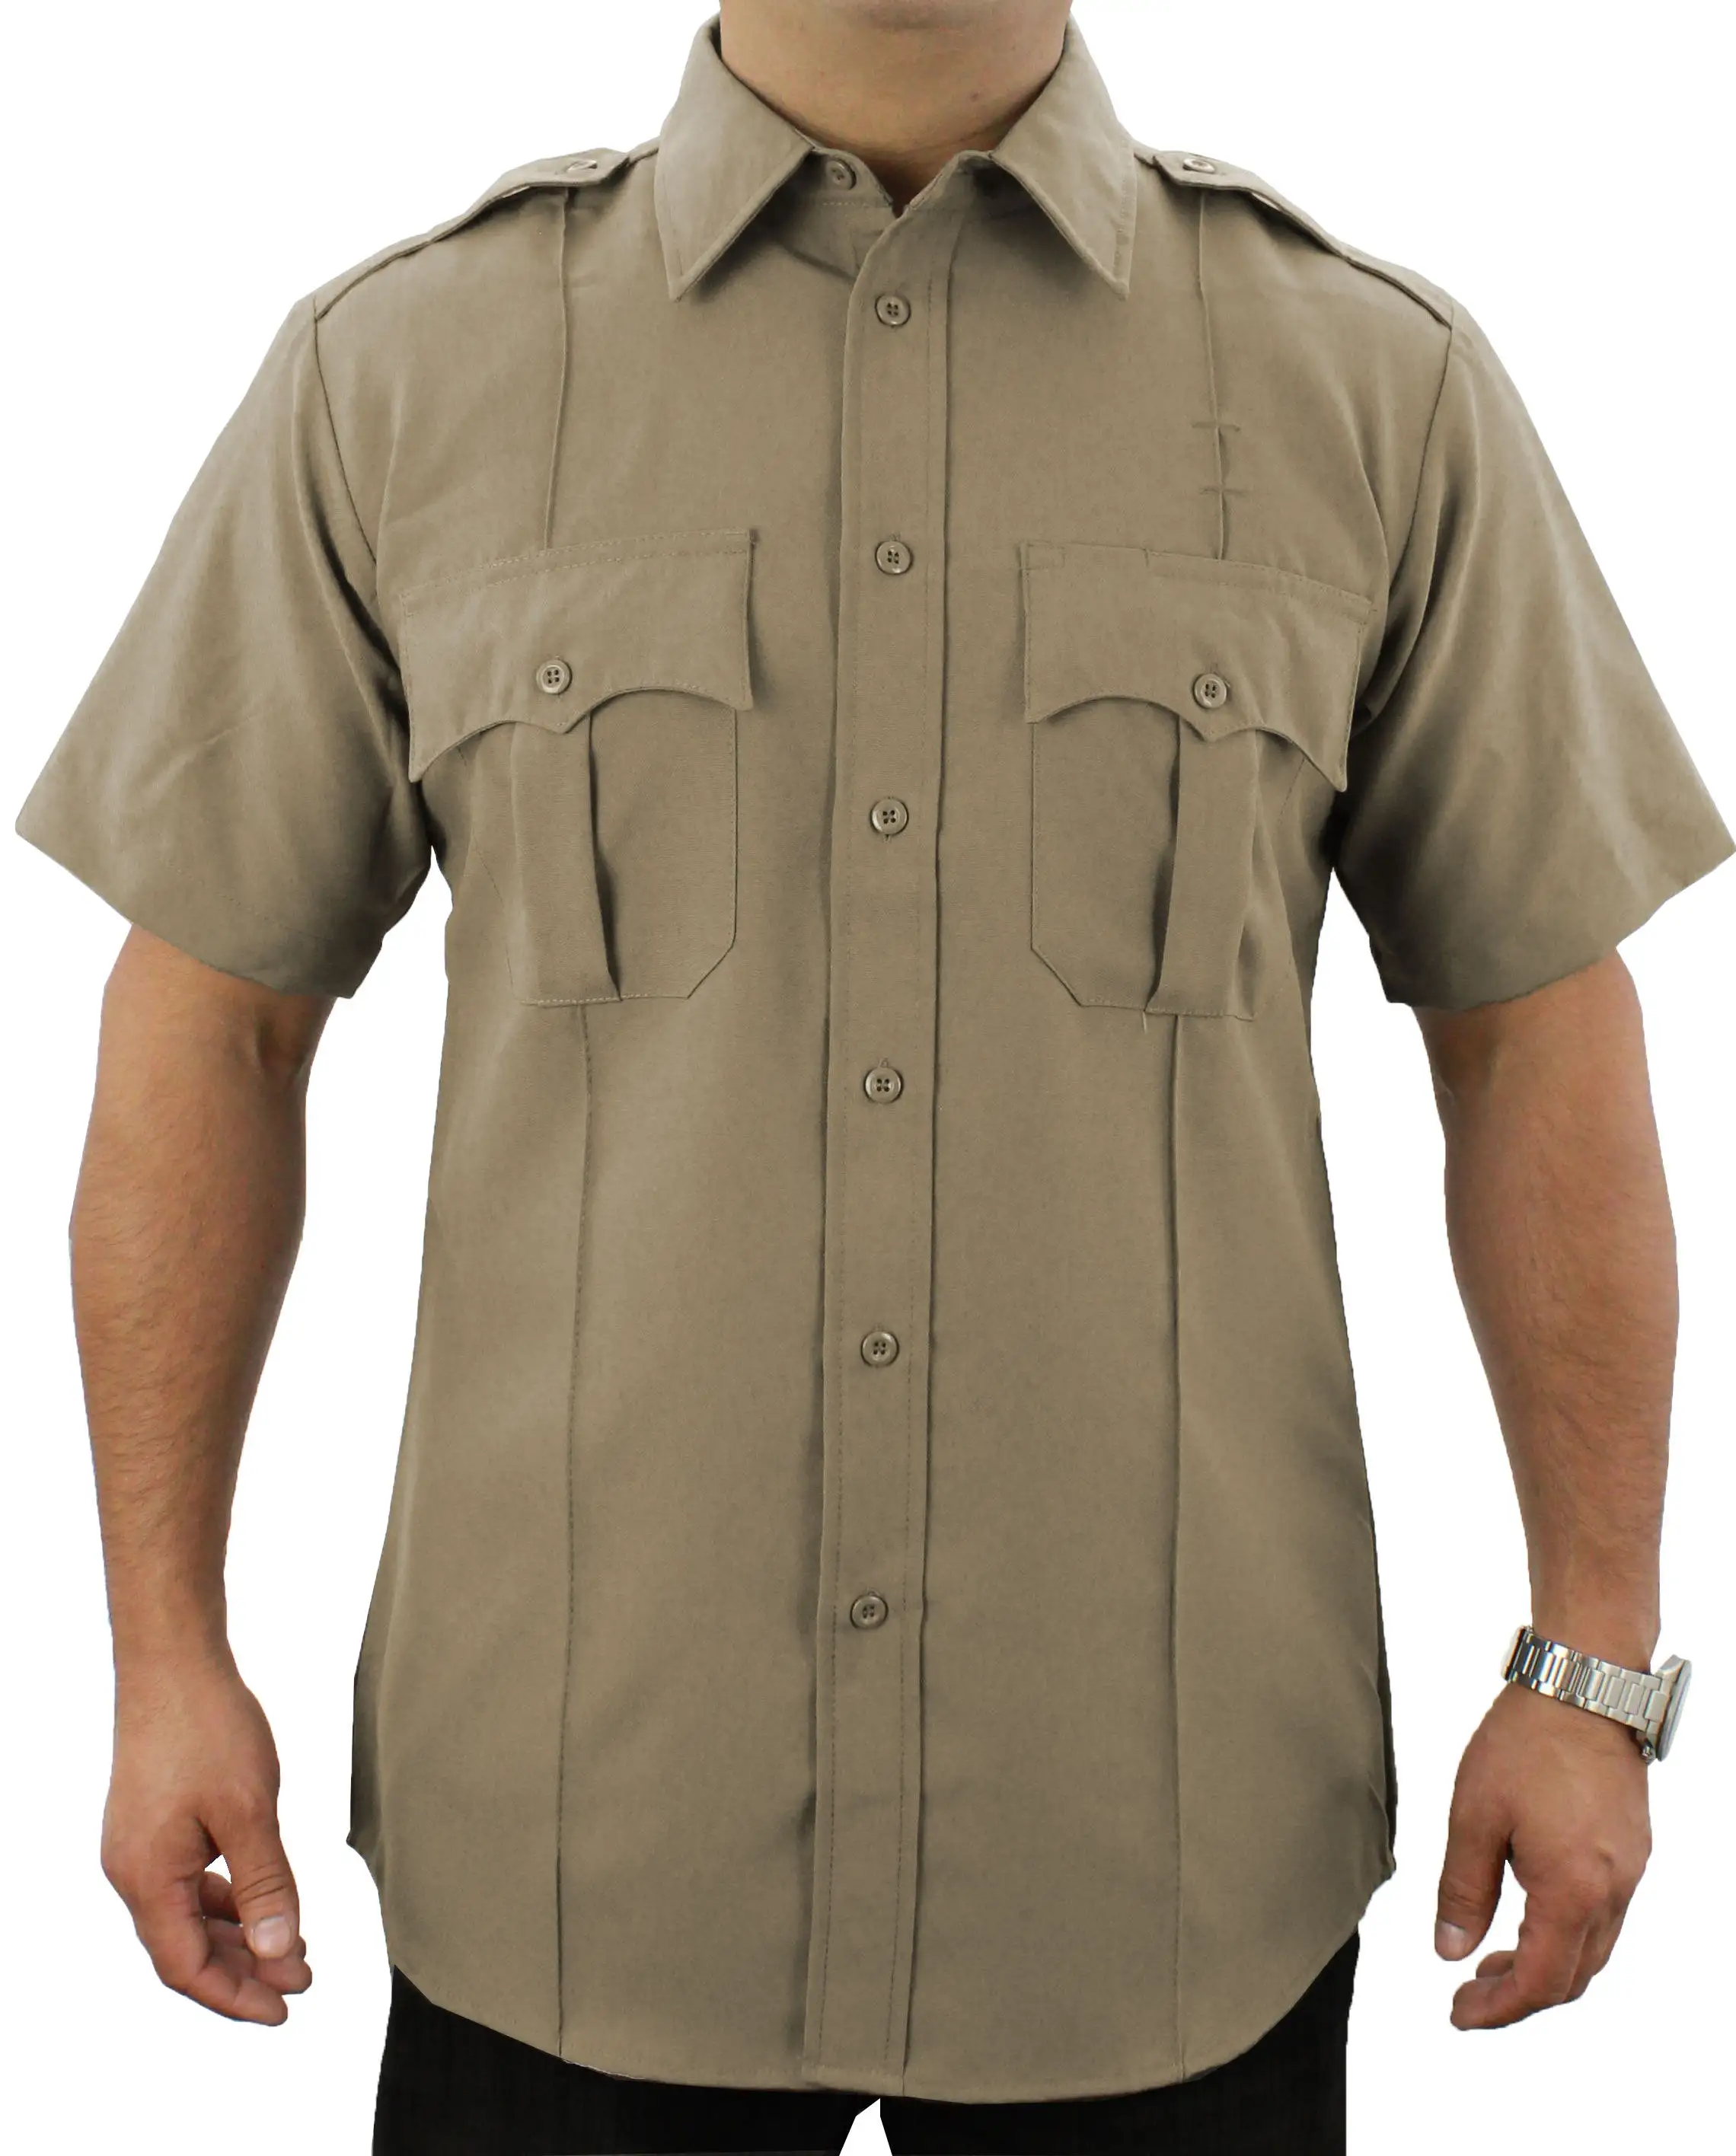 निजी सुरक्षा गार्ड वर्दी छोटी बाजू वाले कर्मचारी सुरक्षा वर्दी डिजाइन काली सुरक्षा शर्ट 100% पॉलिएस्टर शर्ट